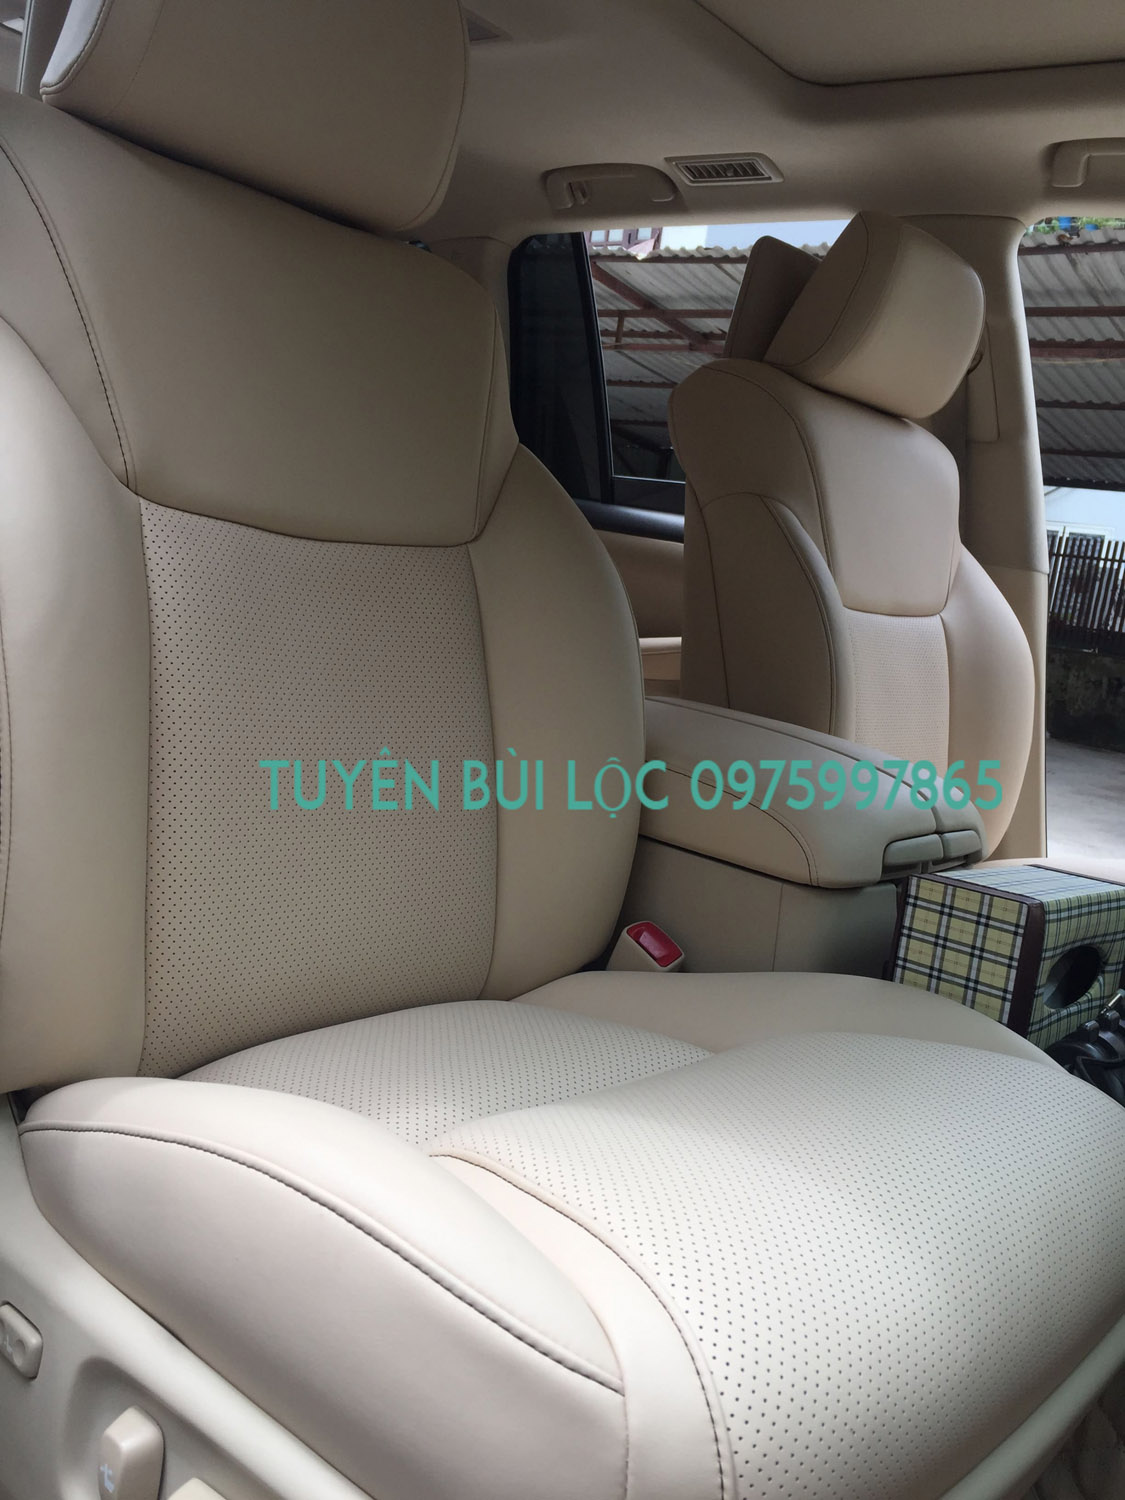 Bọc ghế da xe LEXUS 570 - thay ghế da lexus 570 uy tín và chất lượng